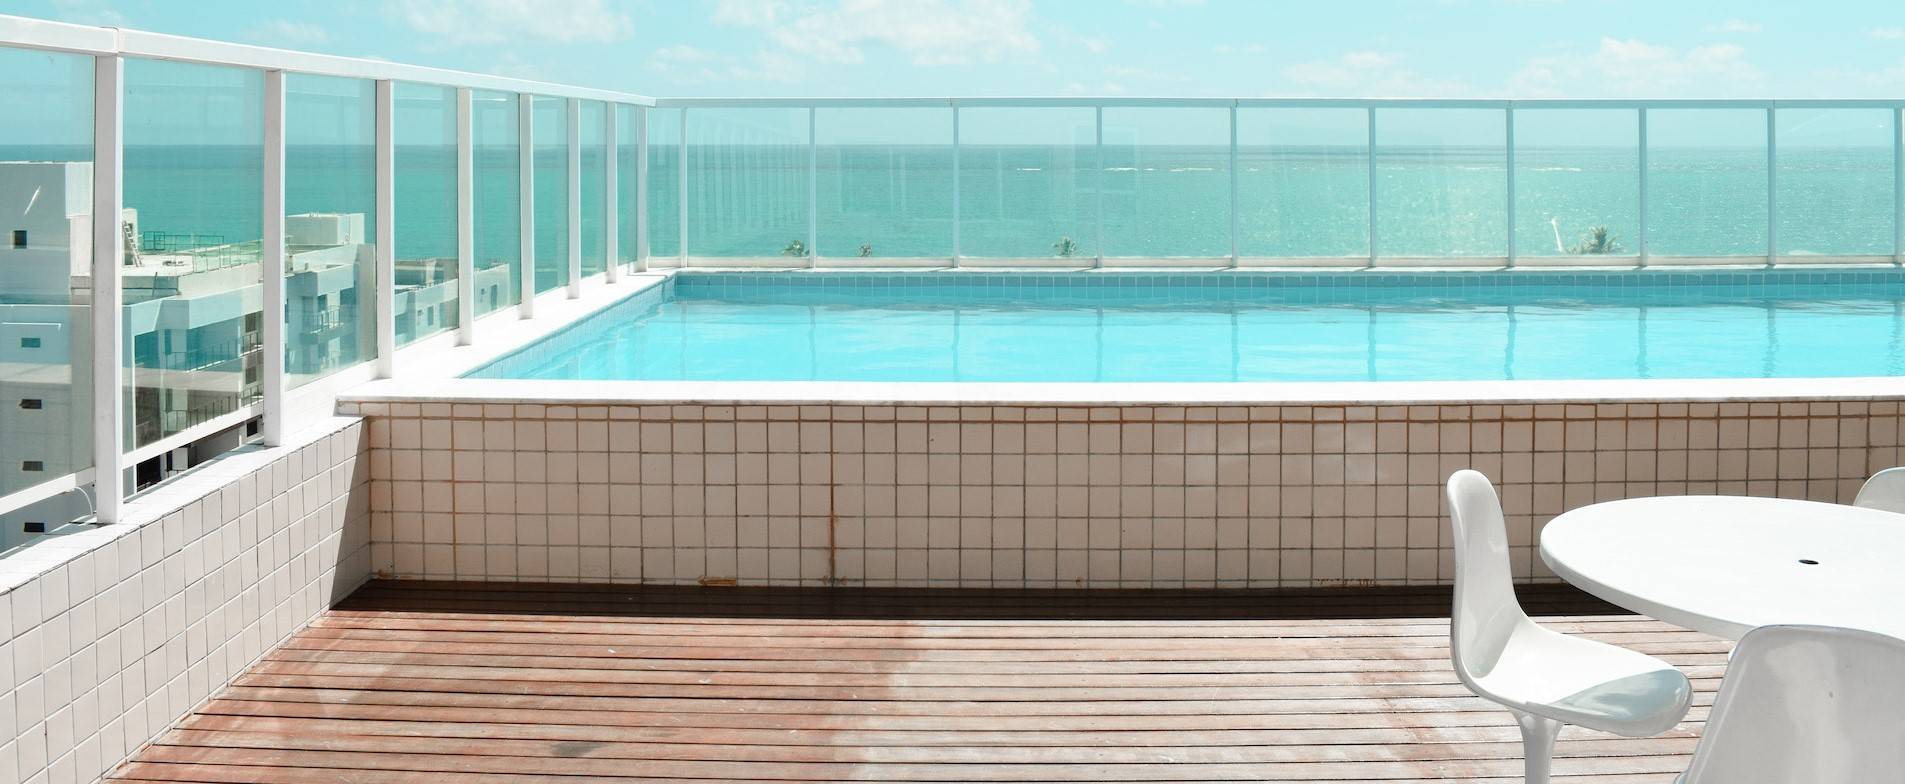 Une piscine est sur une terrasse ensoleillée.